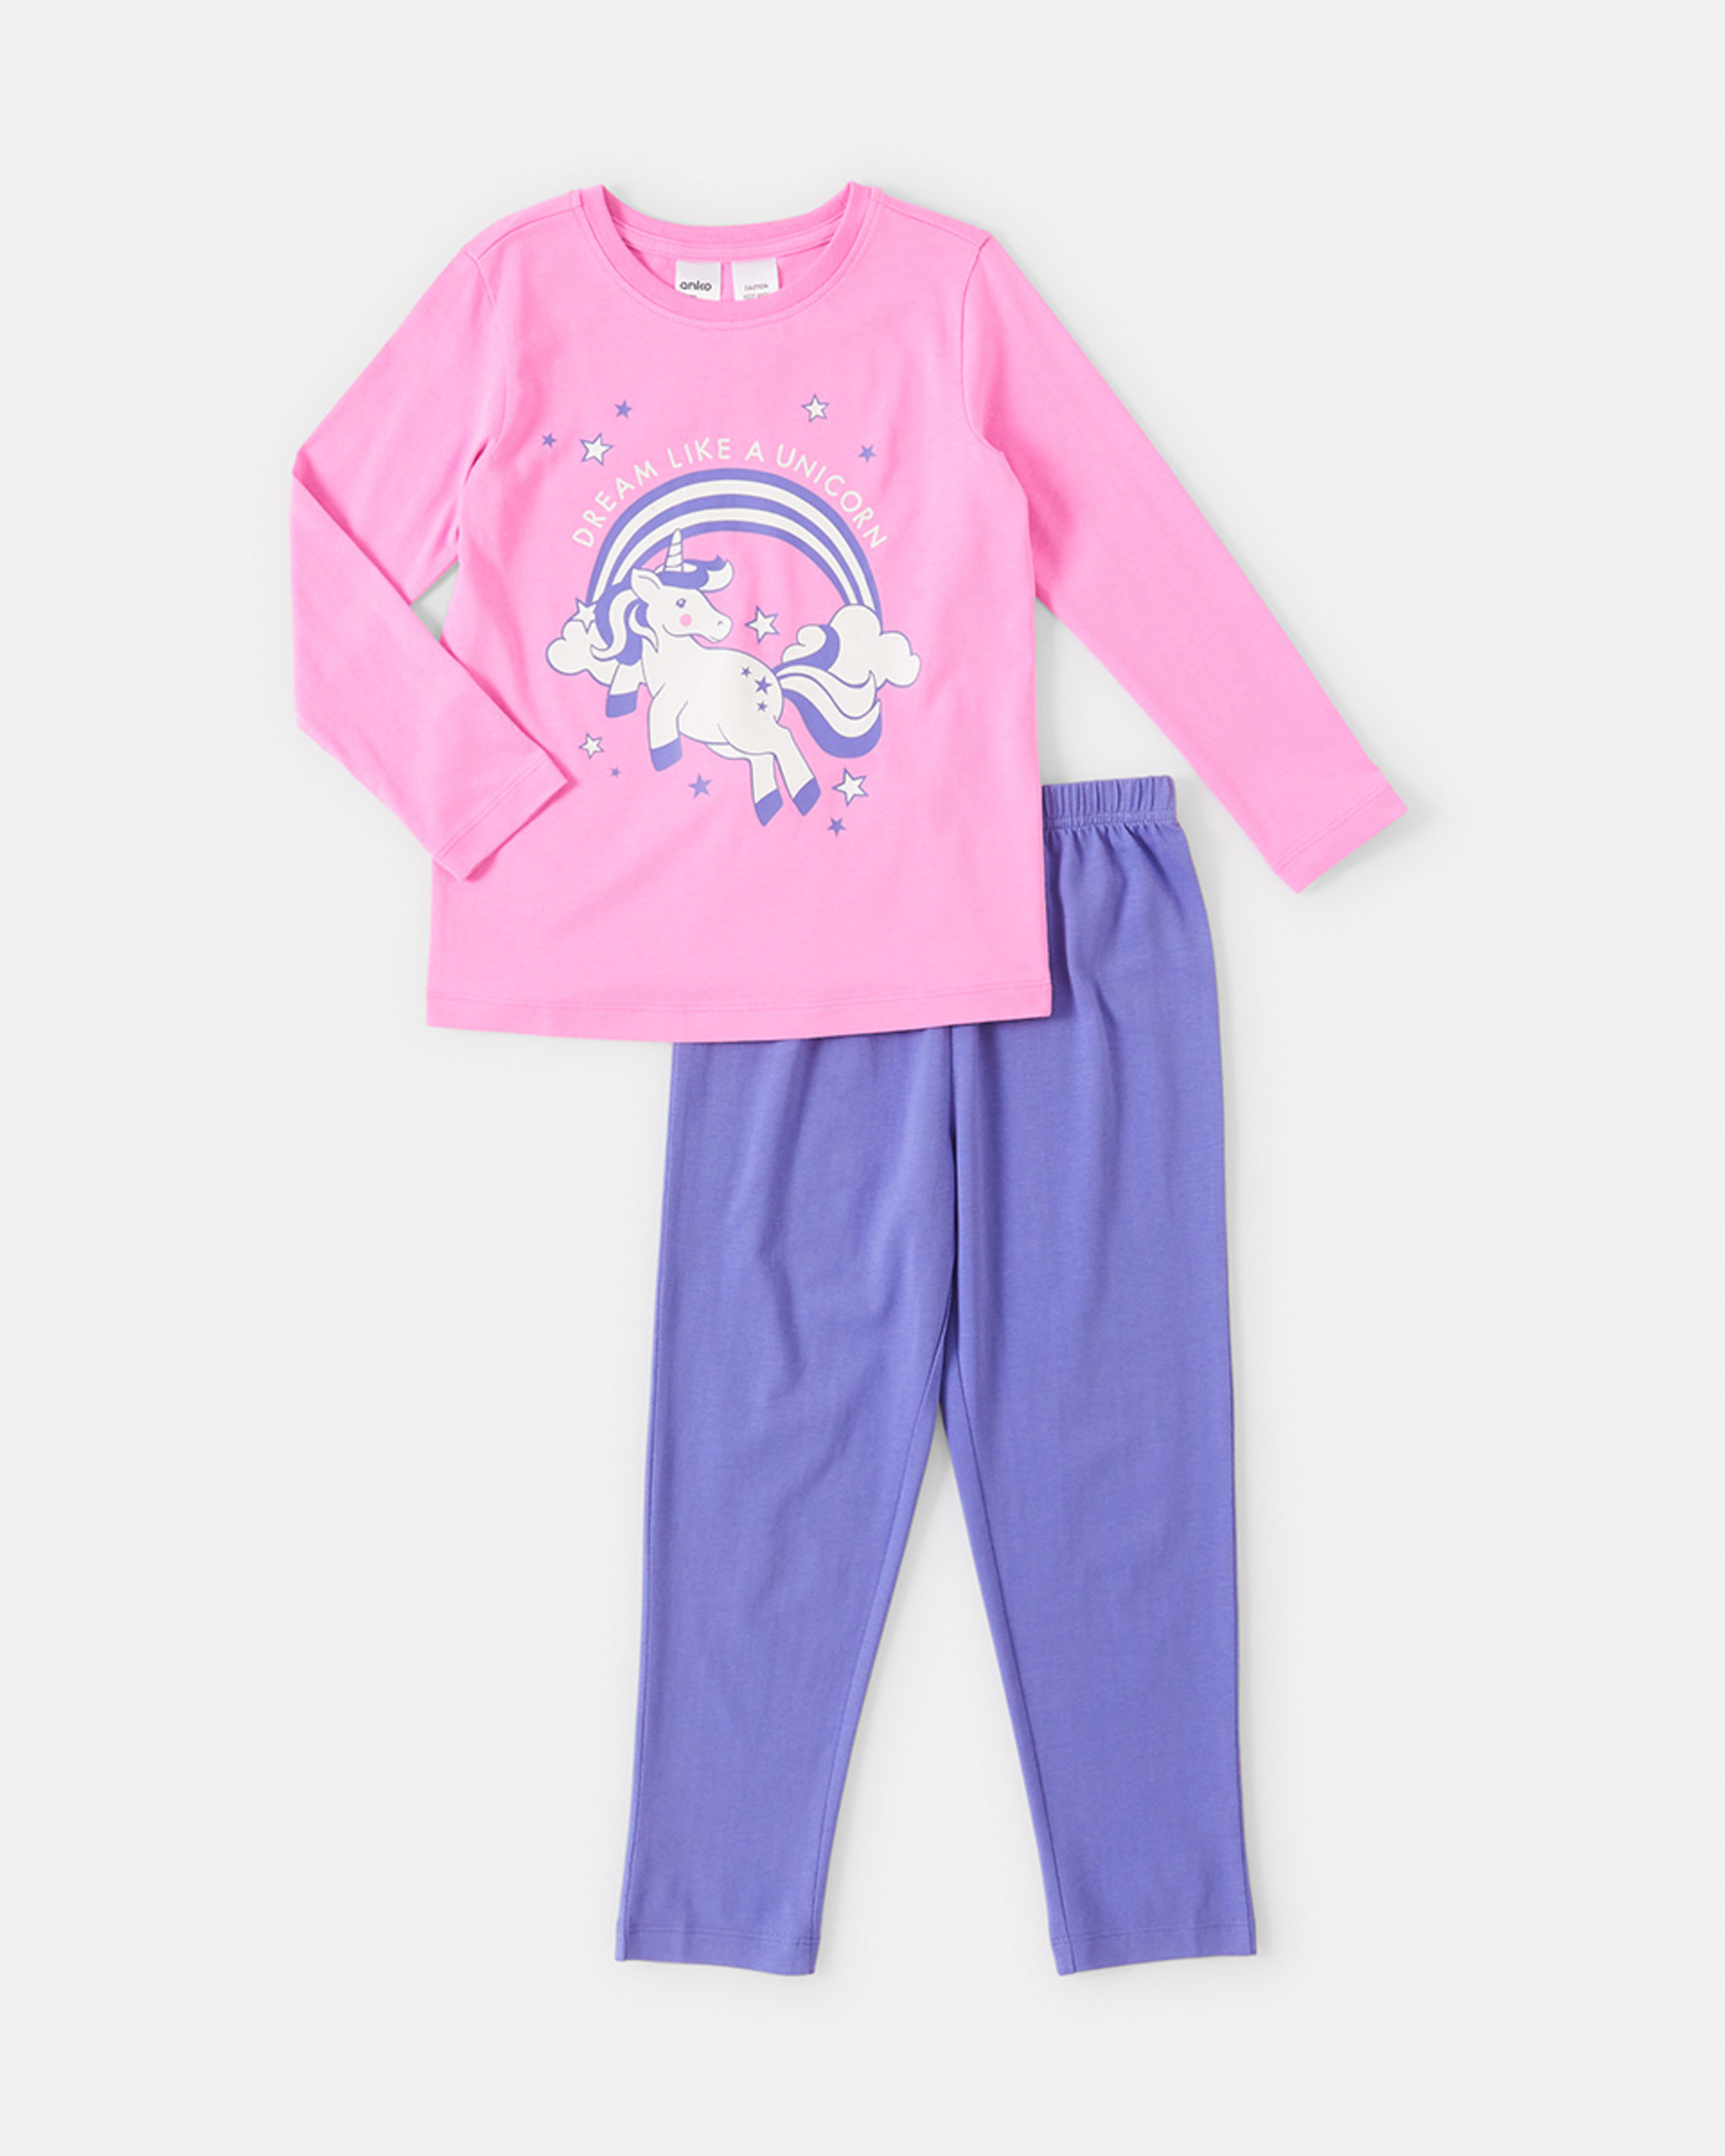 Knit Pyjama Set - Kmart NZ